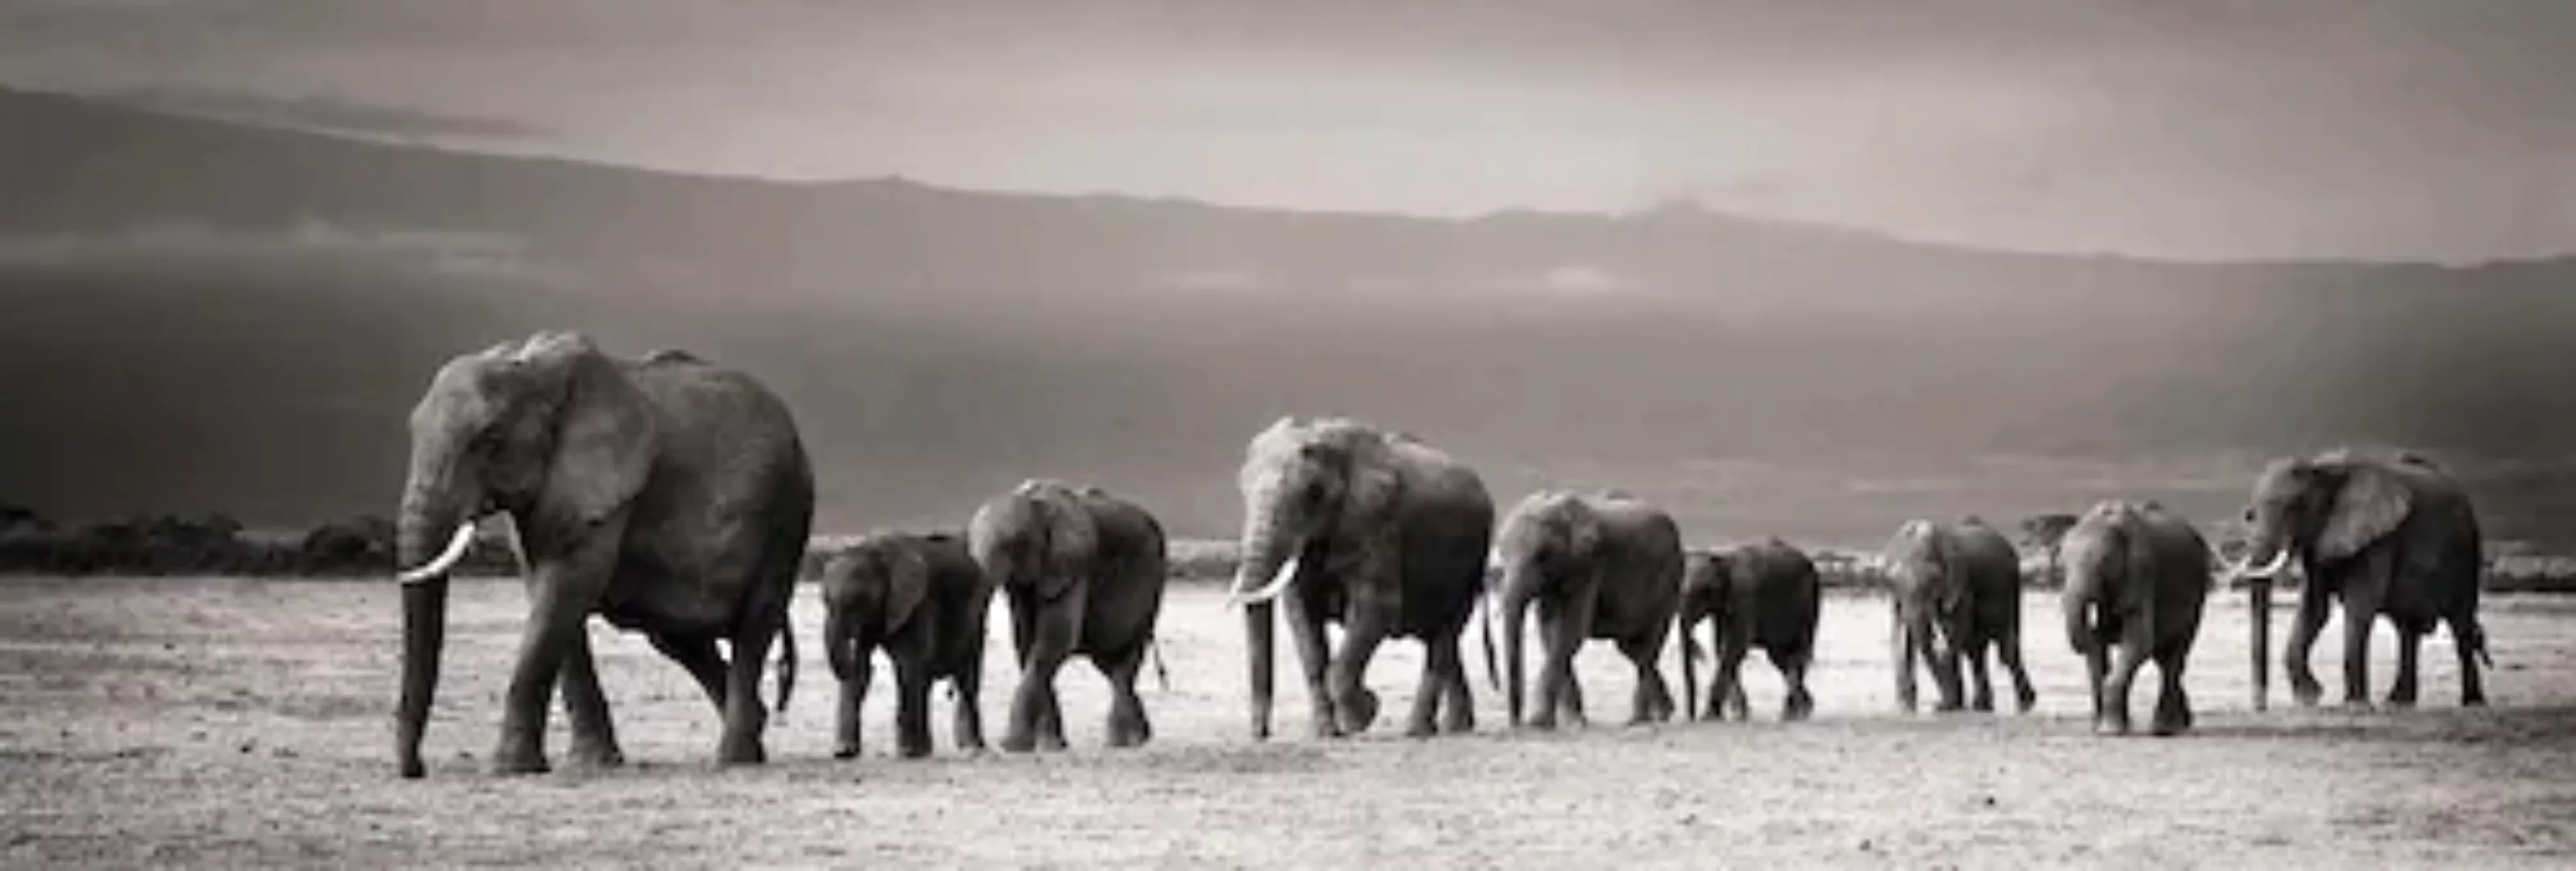 Reinders Wandbild "Elefantenparade" günstig online kaufen